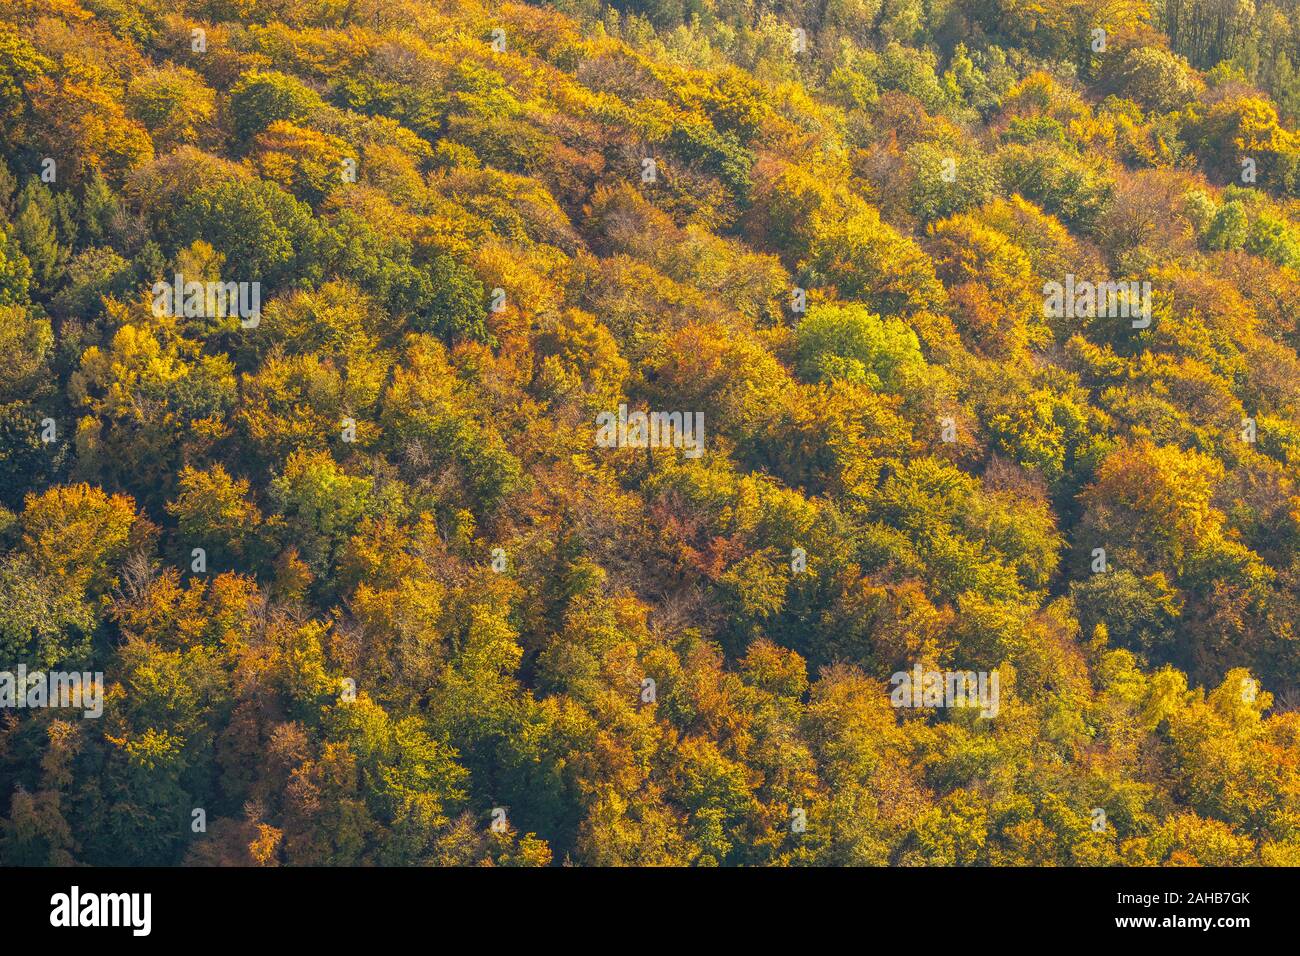 Luftbild, Herbstwald in bunten Farben, Nähe Steinbruch Habbel, Arnsberg, Sauerland, Nordrhein-Westfalen, Deutschland, DE, Europa, Herbstfarben, Herbst Stock Photo